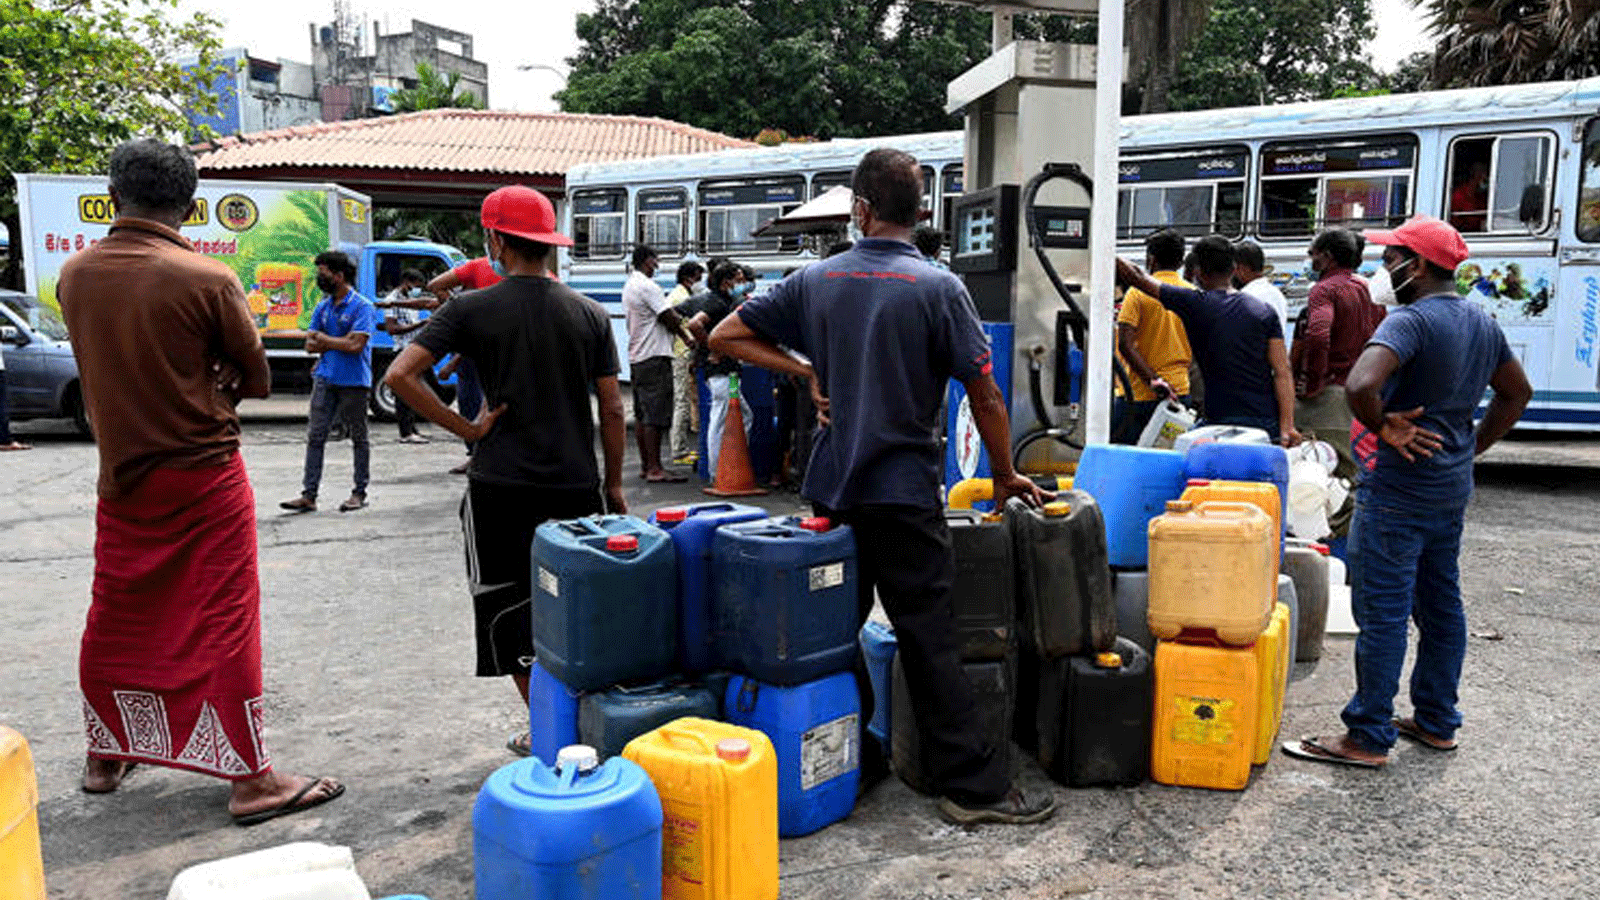 مواطنون يصطفون في طابور لشراء الديزل قرب محطة وقود في سري كولومبو